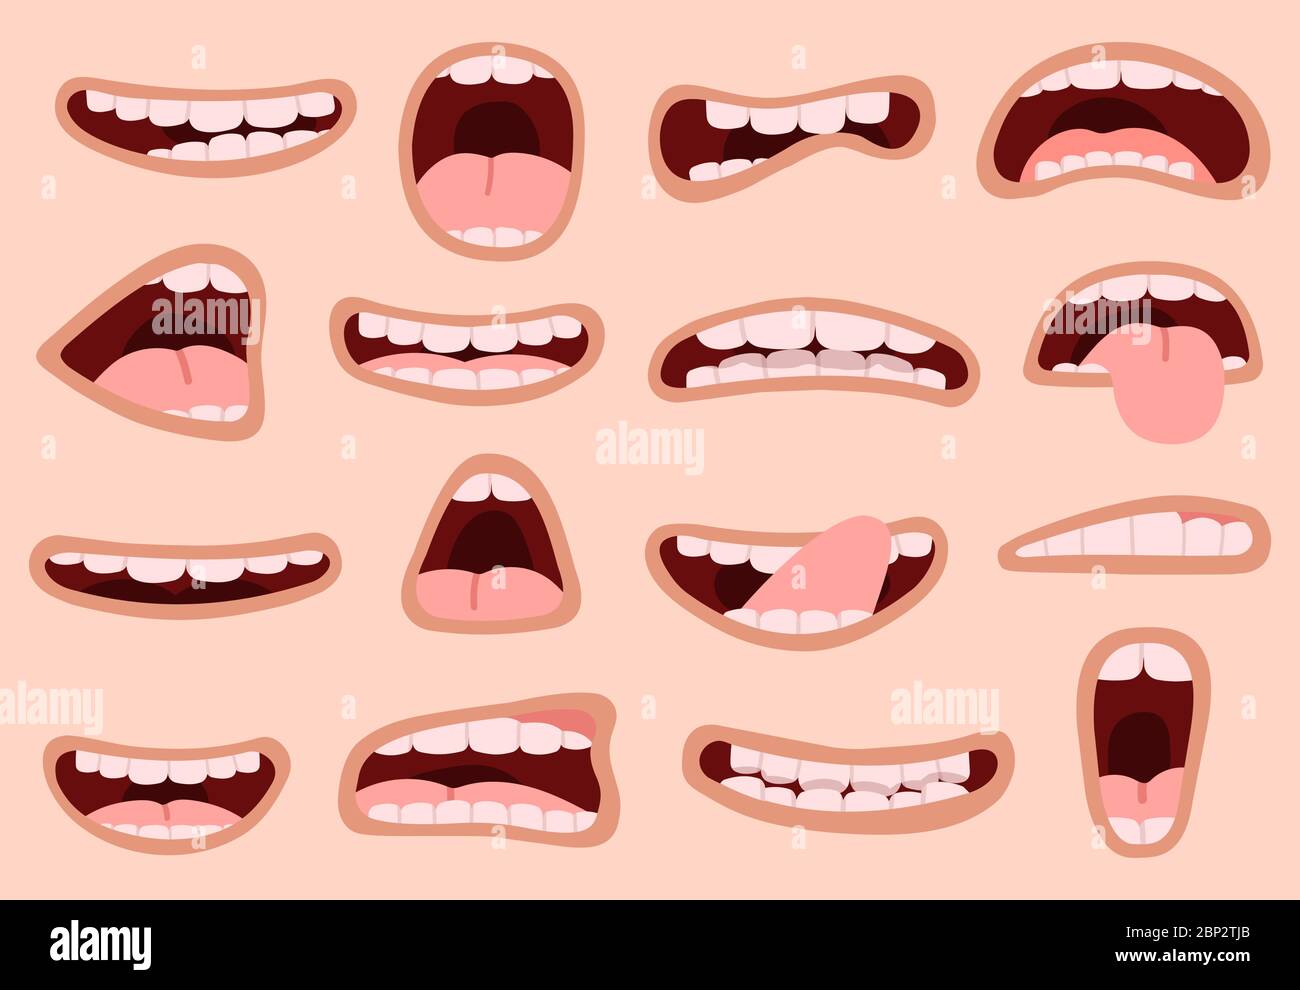 Cartoon-Mund. Hand gezeichnet lustige Comic Mund mit Zungen, lachen Emotionen Karikatur Lippen, Mimik Vektor-Illustration Symbole gesetzt Stock Vektor